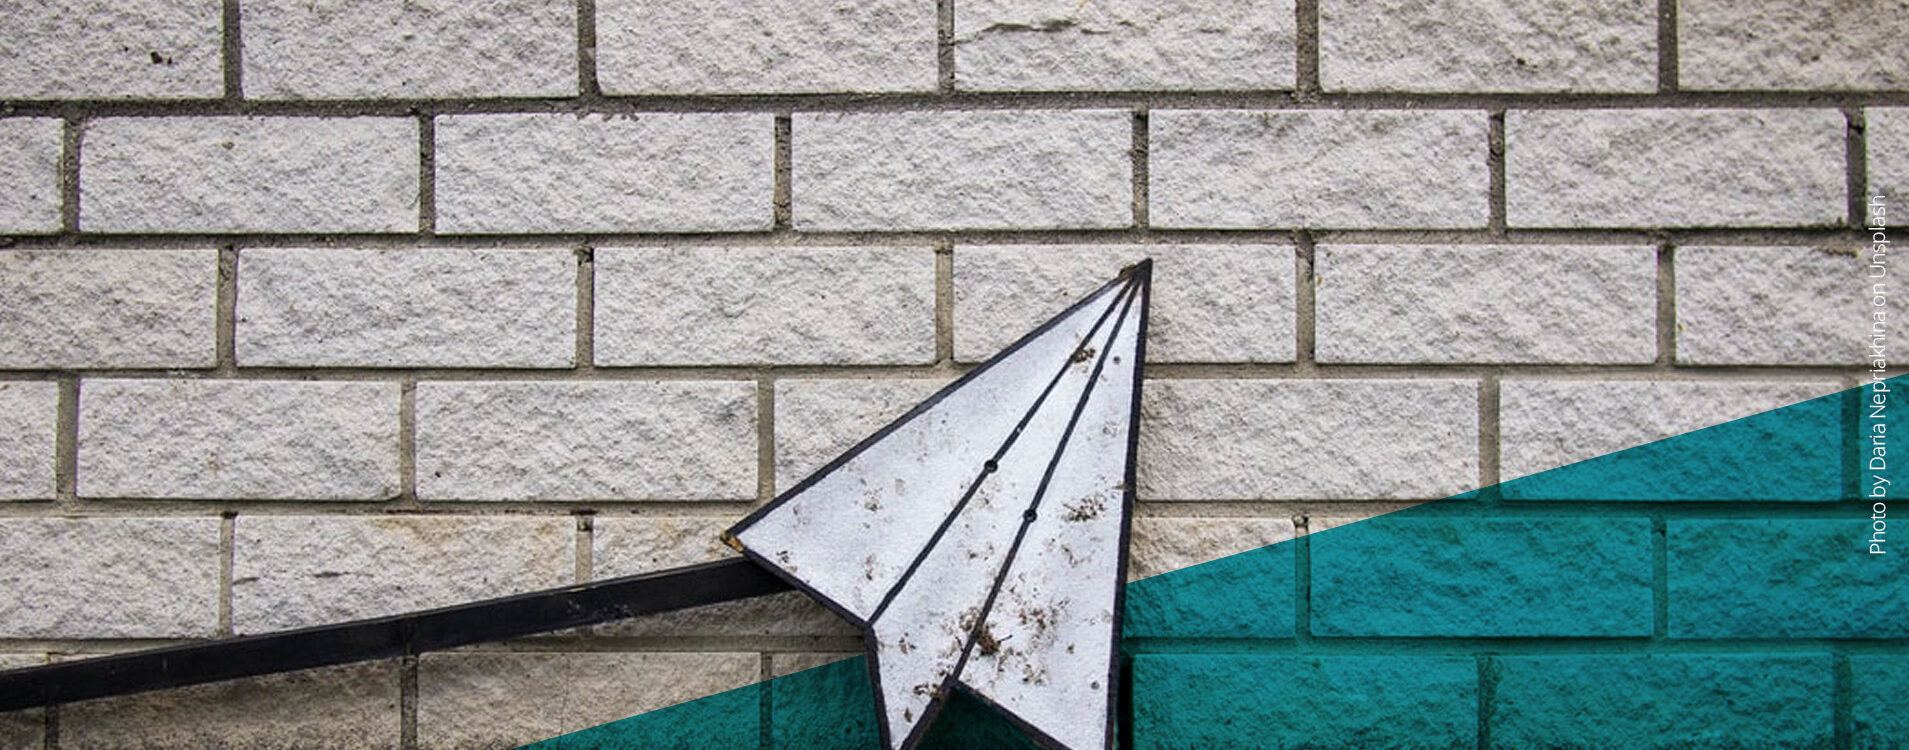 Papierflugzeug aus Eisen vor einer Steinmauer